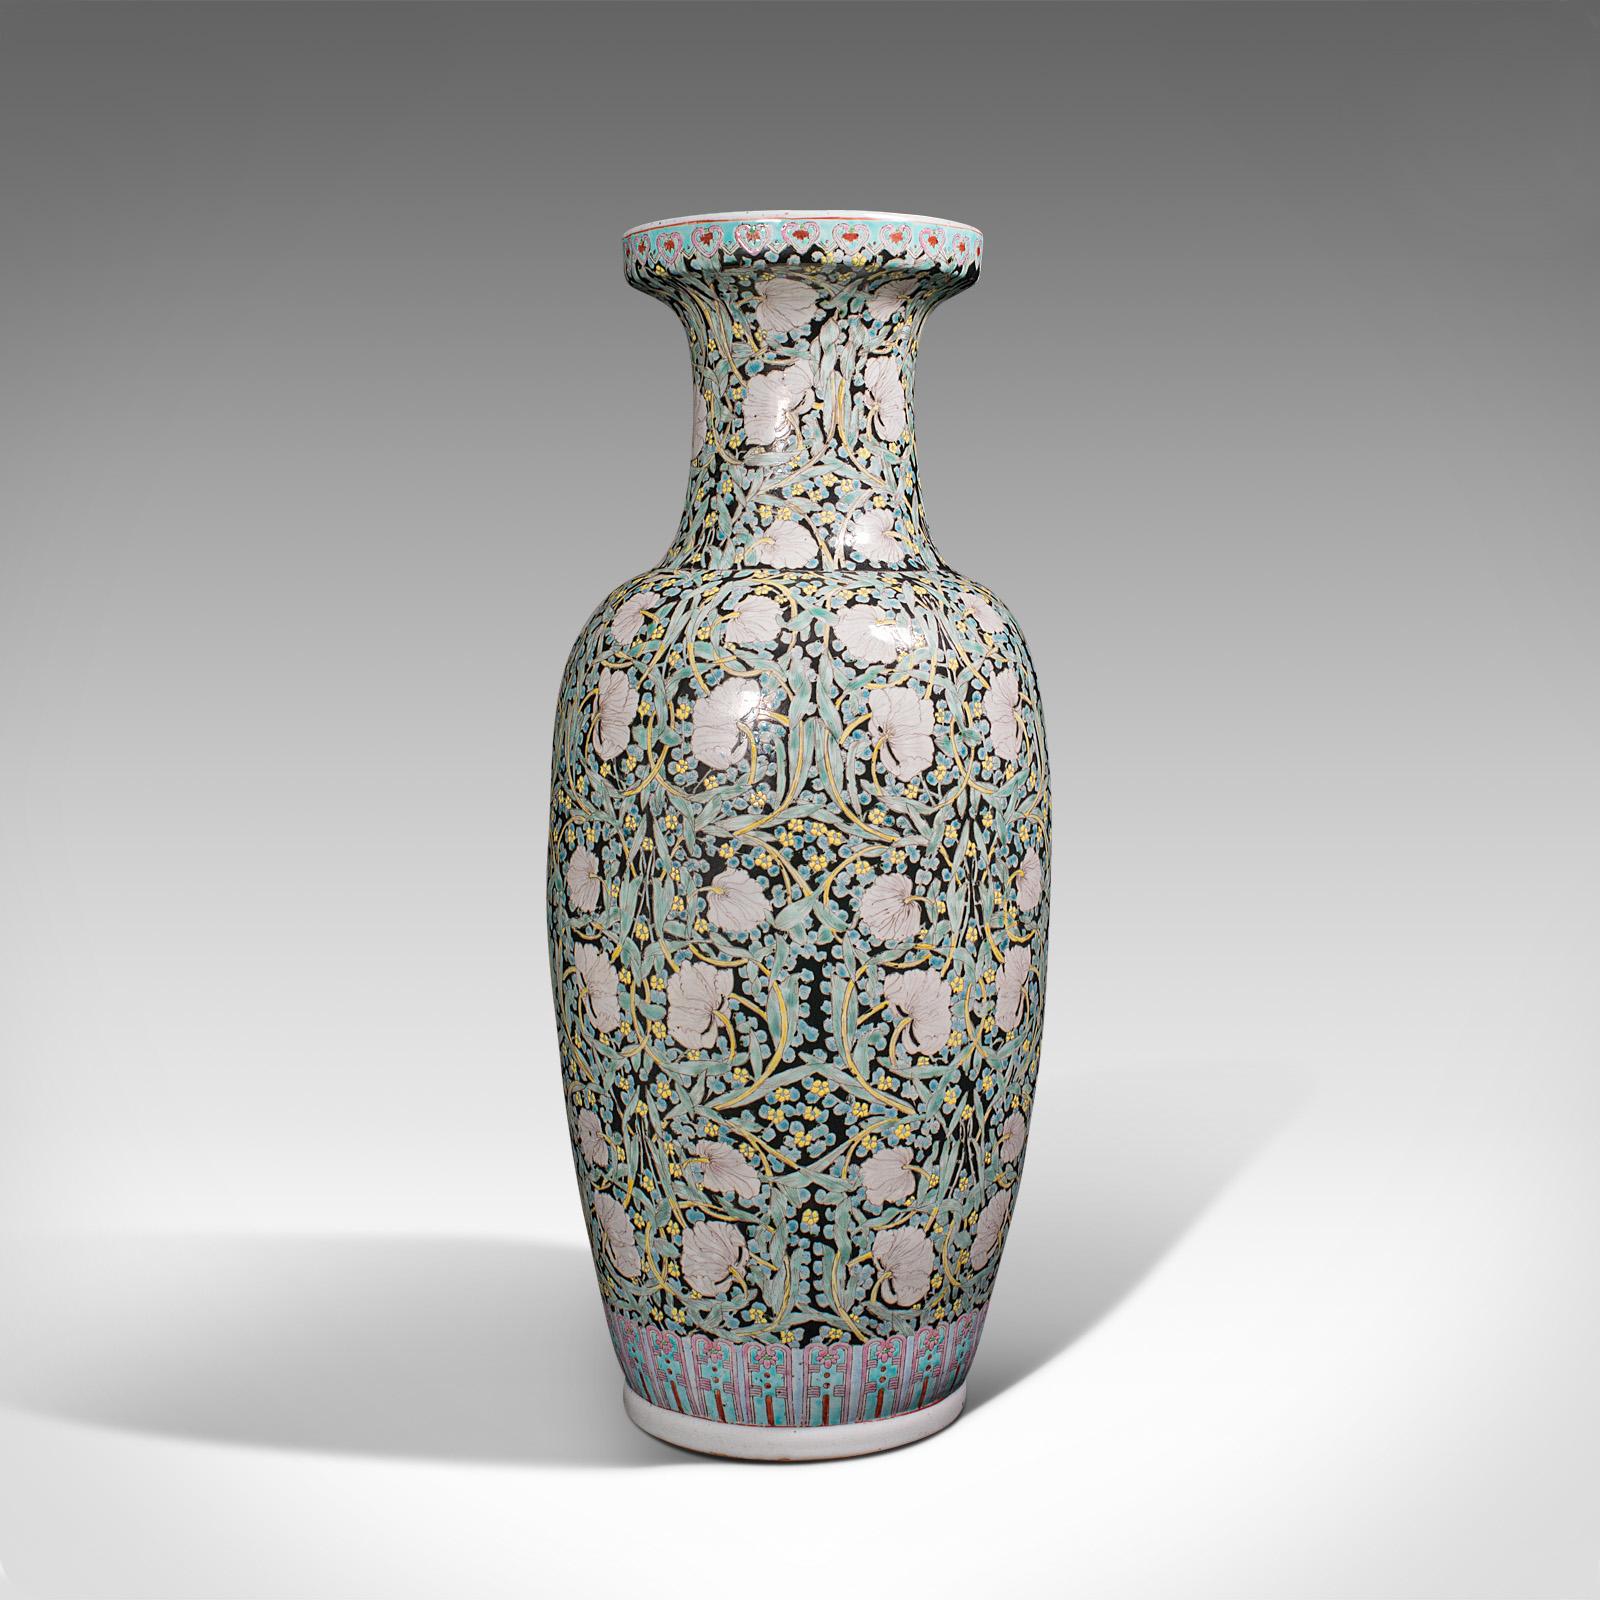 Il s'agit d'un grand vase à tige vintage. Une urne à fleurs en céramique orientale, datant de la fin de la période Art Déco, vers 1950. 

Des proportions attrayantes, idéales pour les arrangements plus grands
Présente une patine d'usage désirable